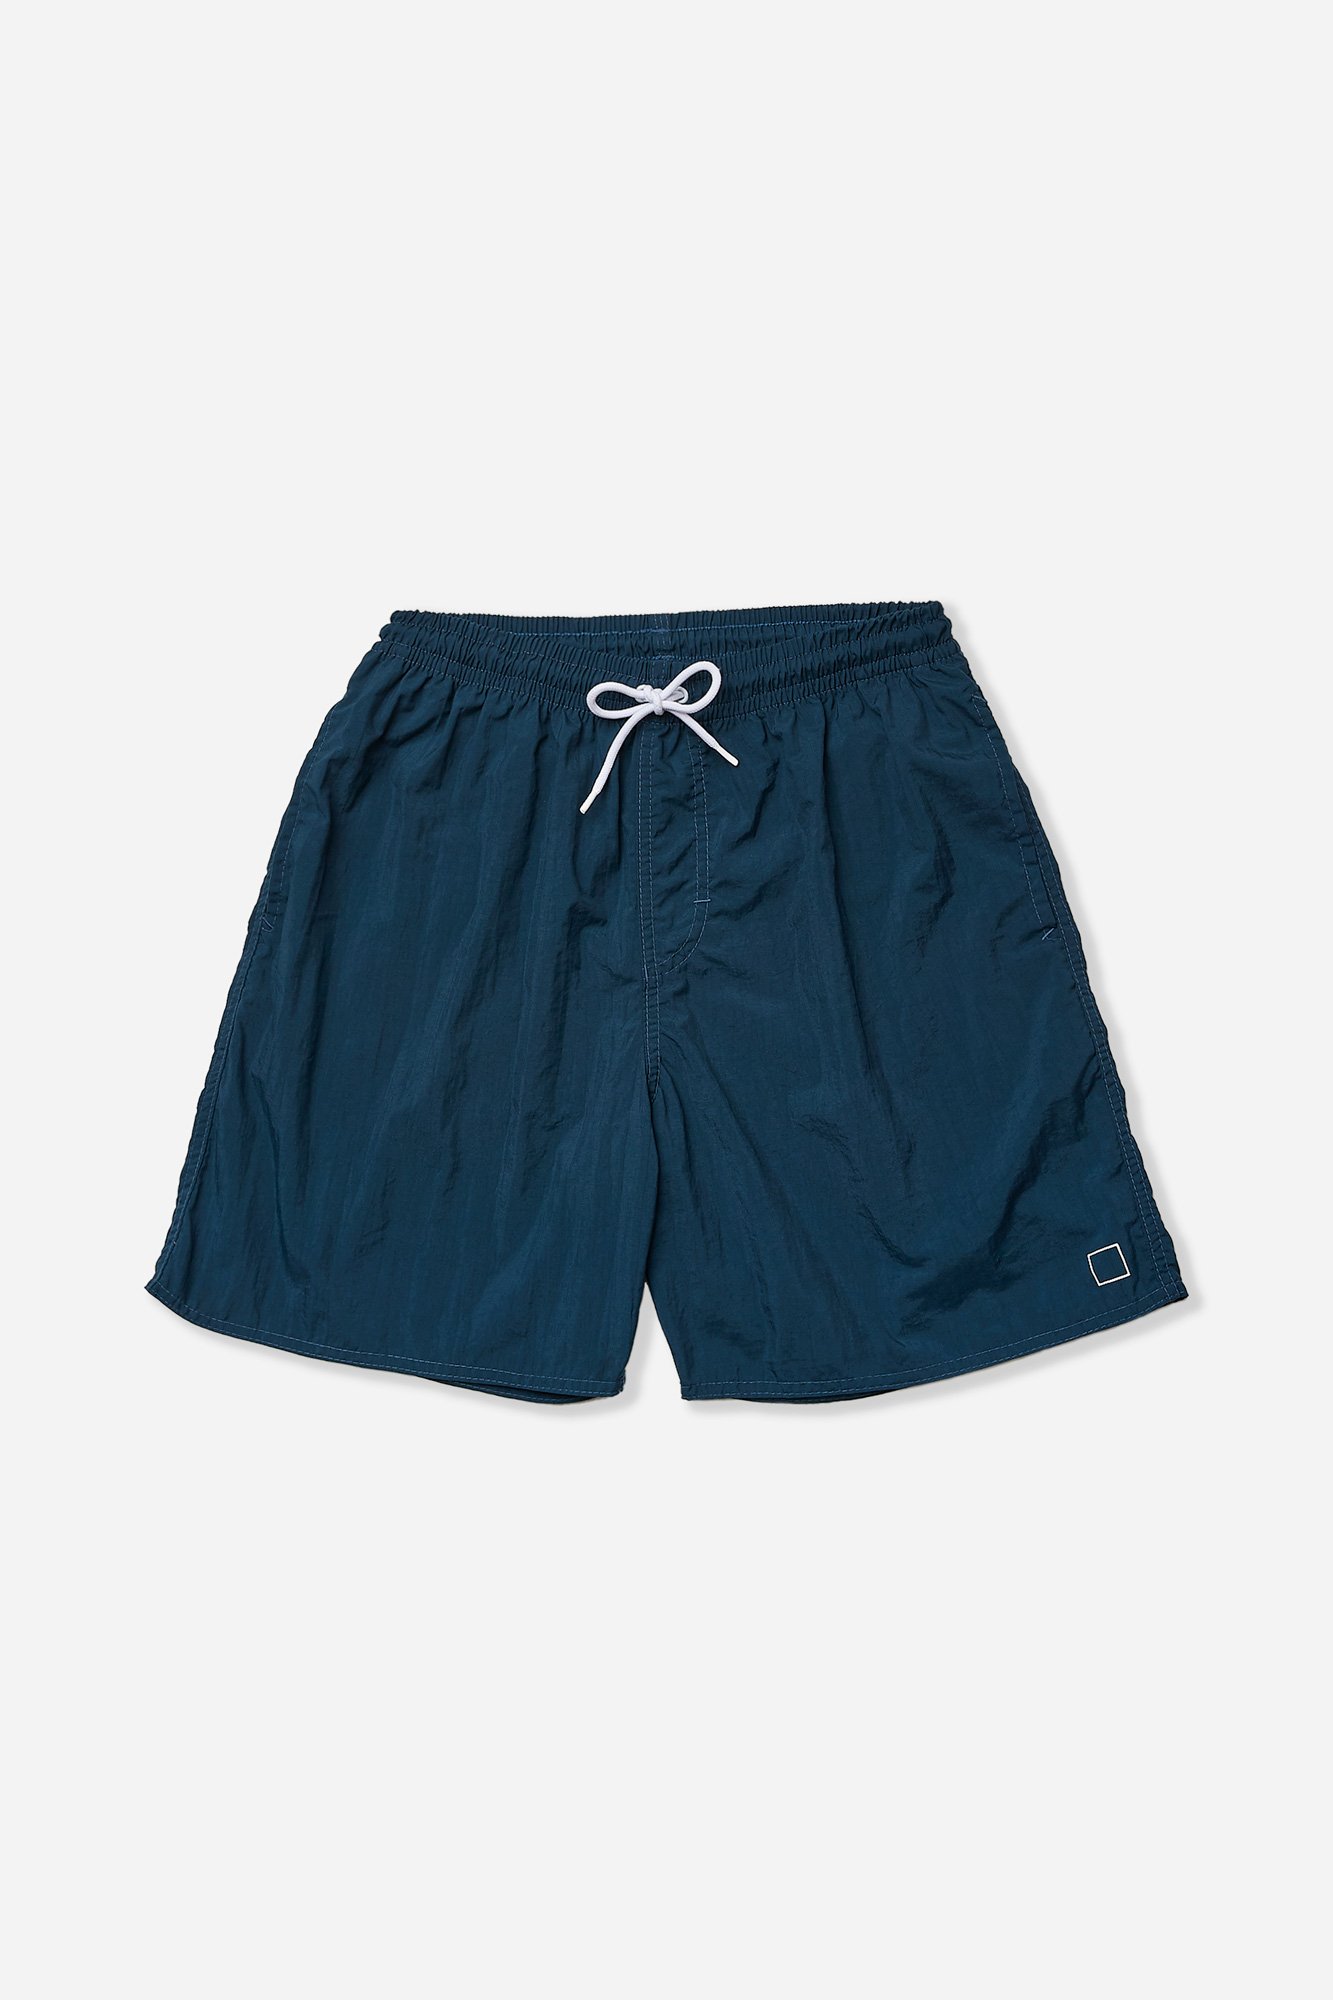 03 shorts poliamida azul marinho